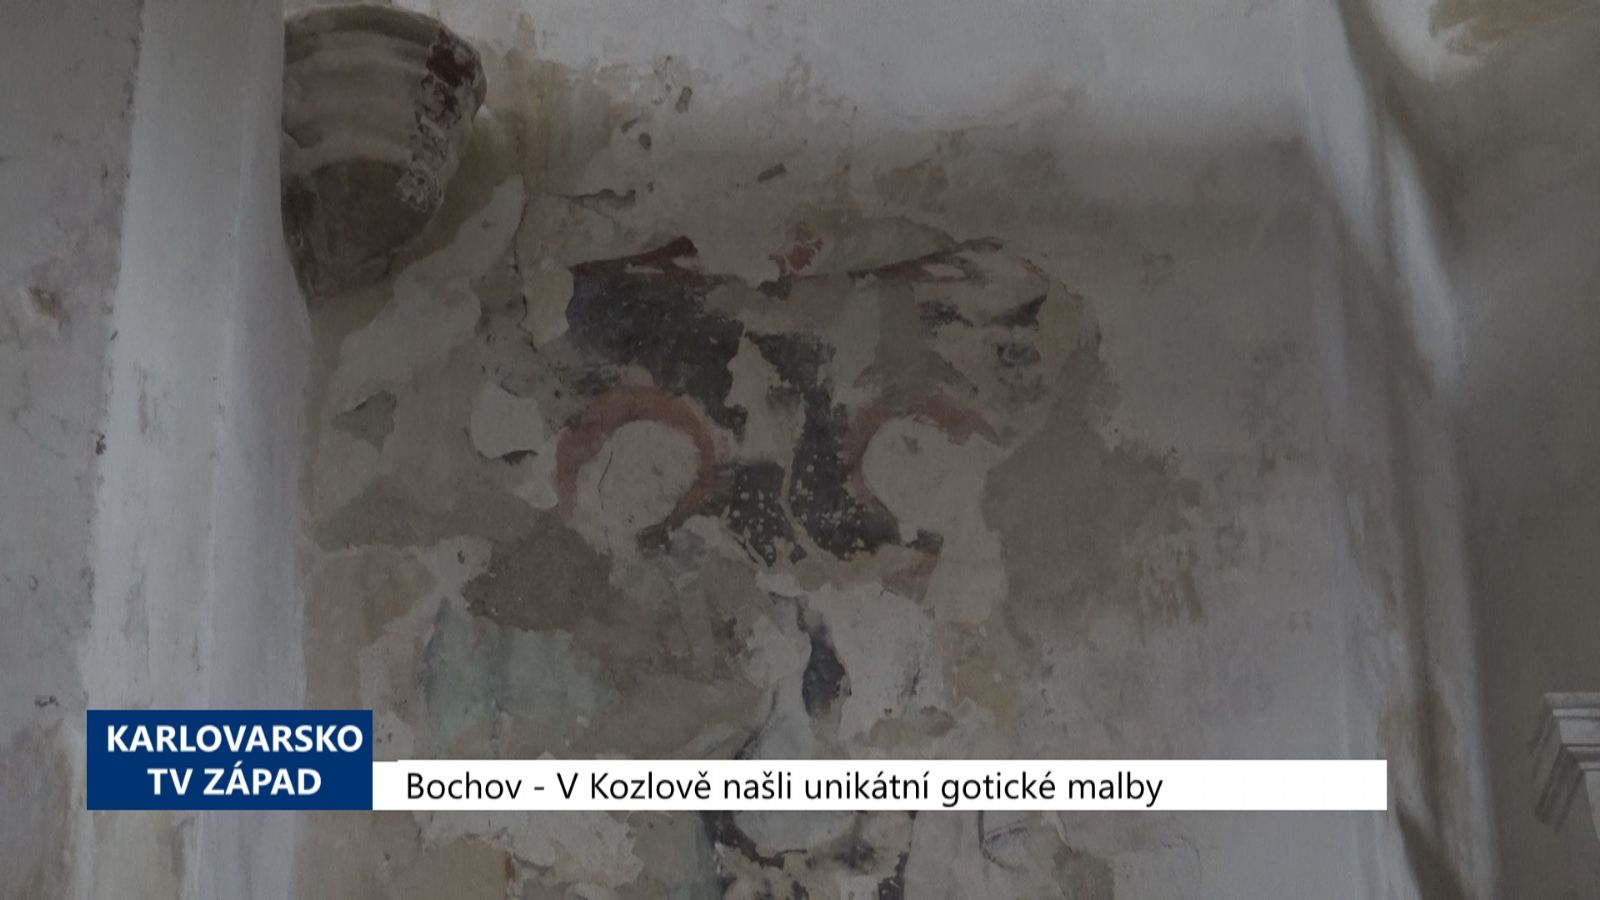 Bochov: V Kozlově našli unikátní gotické malby (TV Západ)